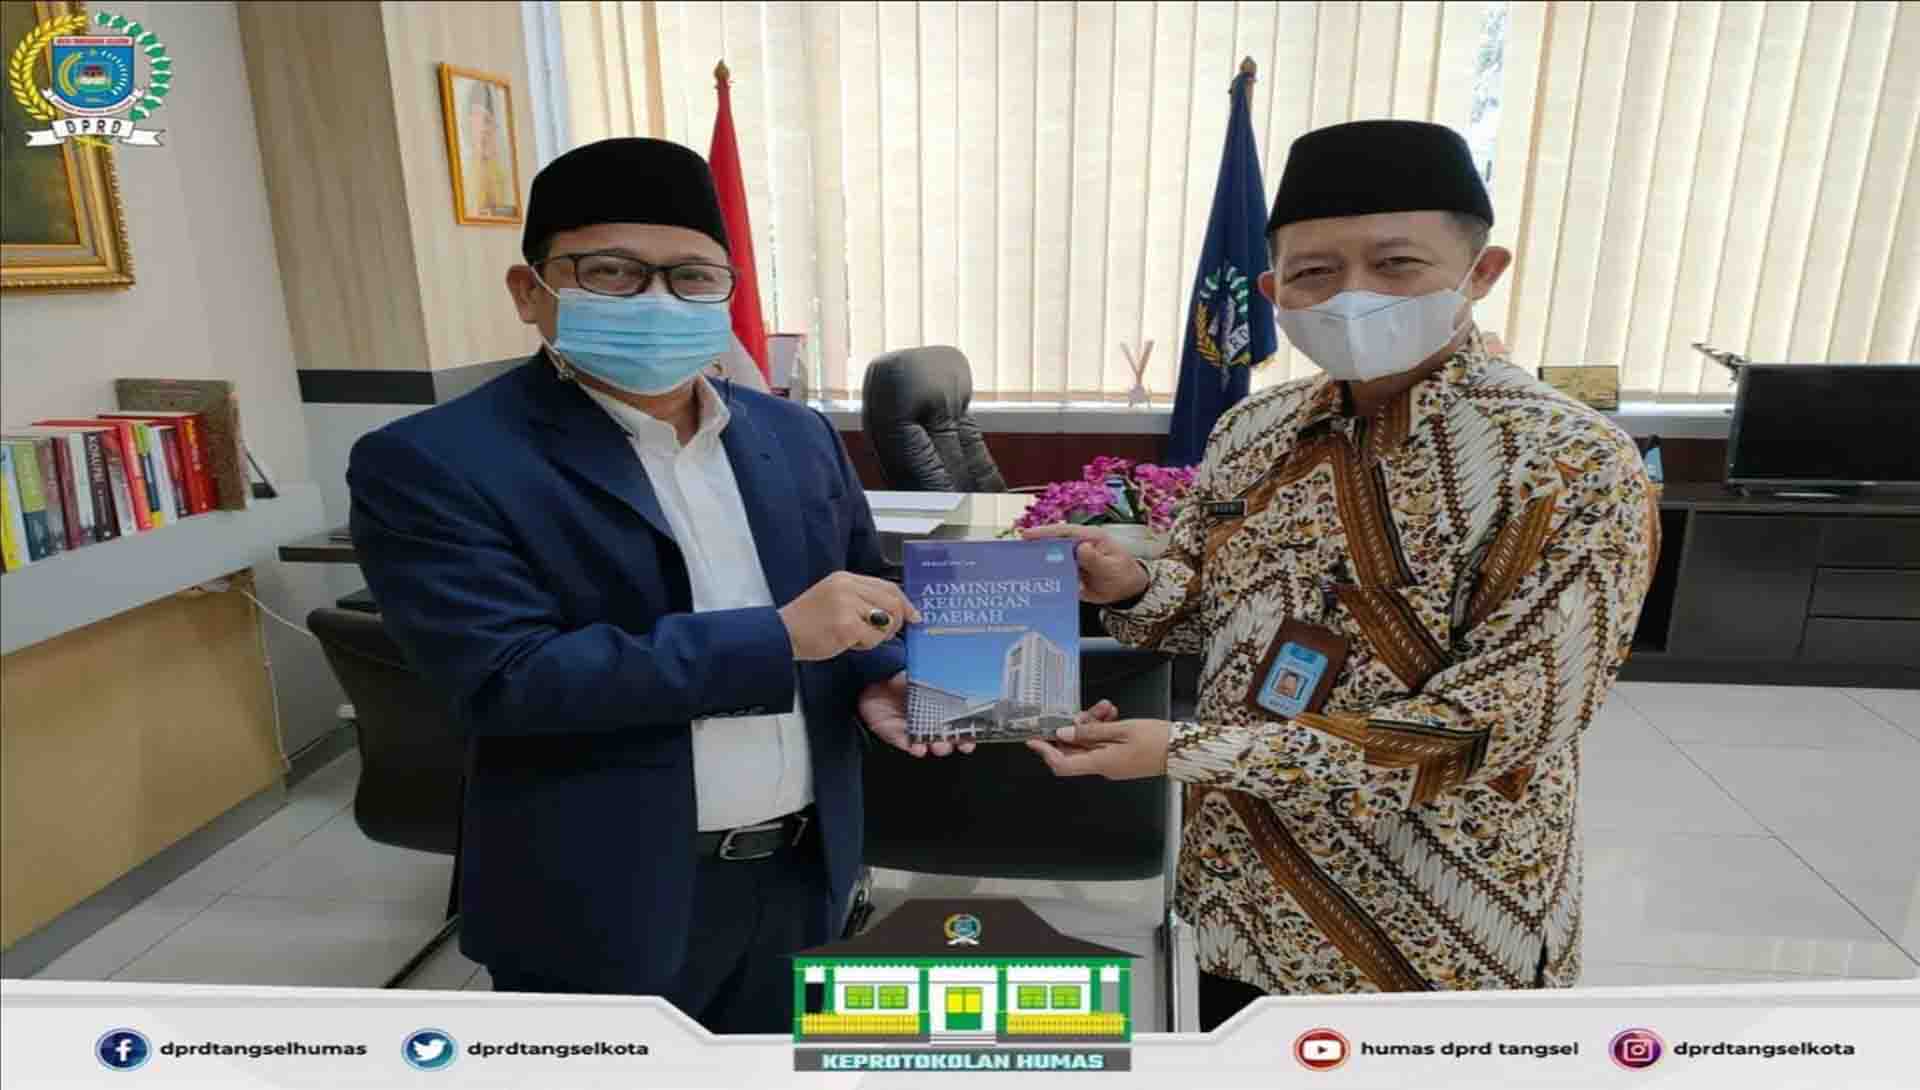 Ketua DPRD menerima simbolis Donasi Buku Administrasi Keuangan Daerah